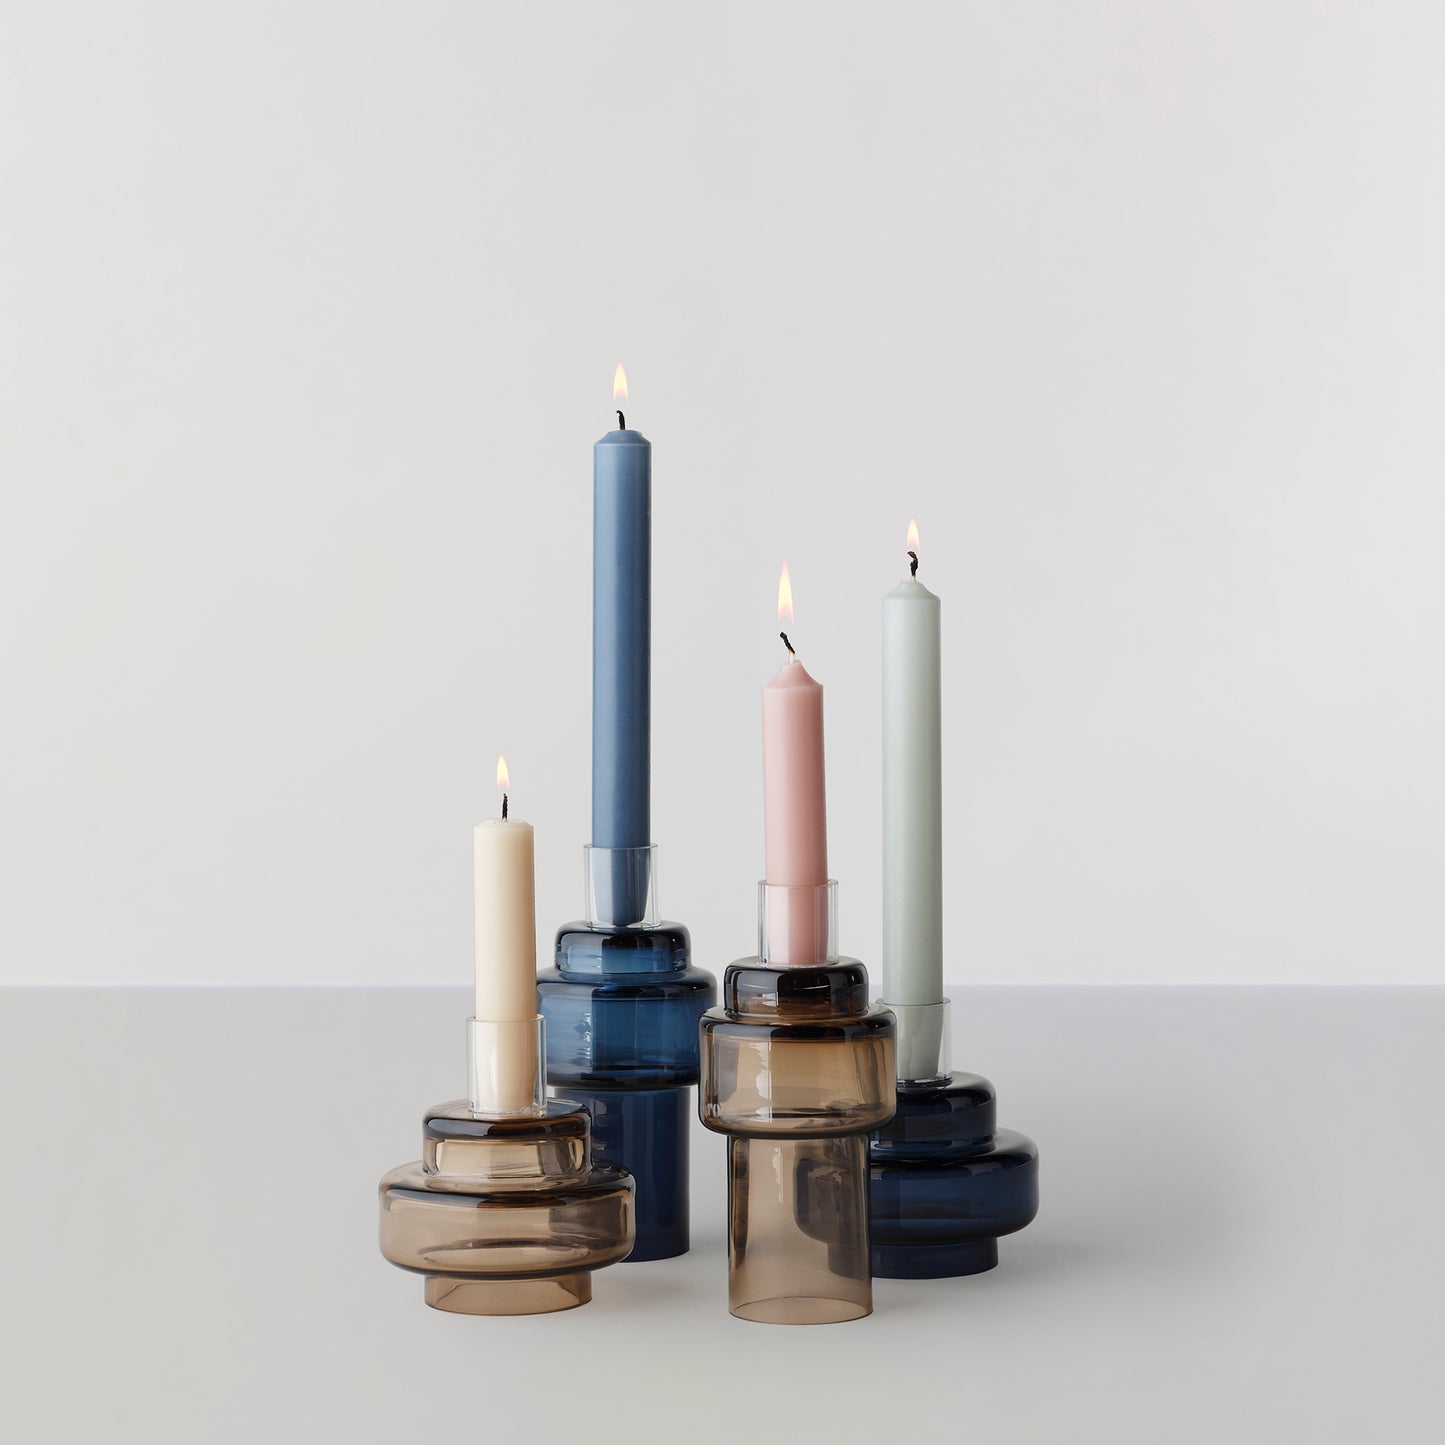 Glass Candlestick no. 55 - Indigo blue